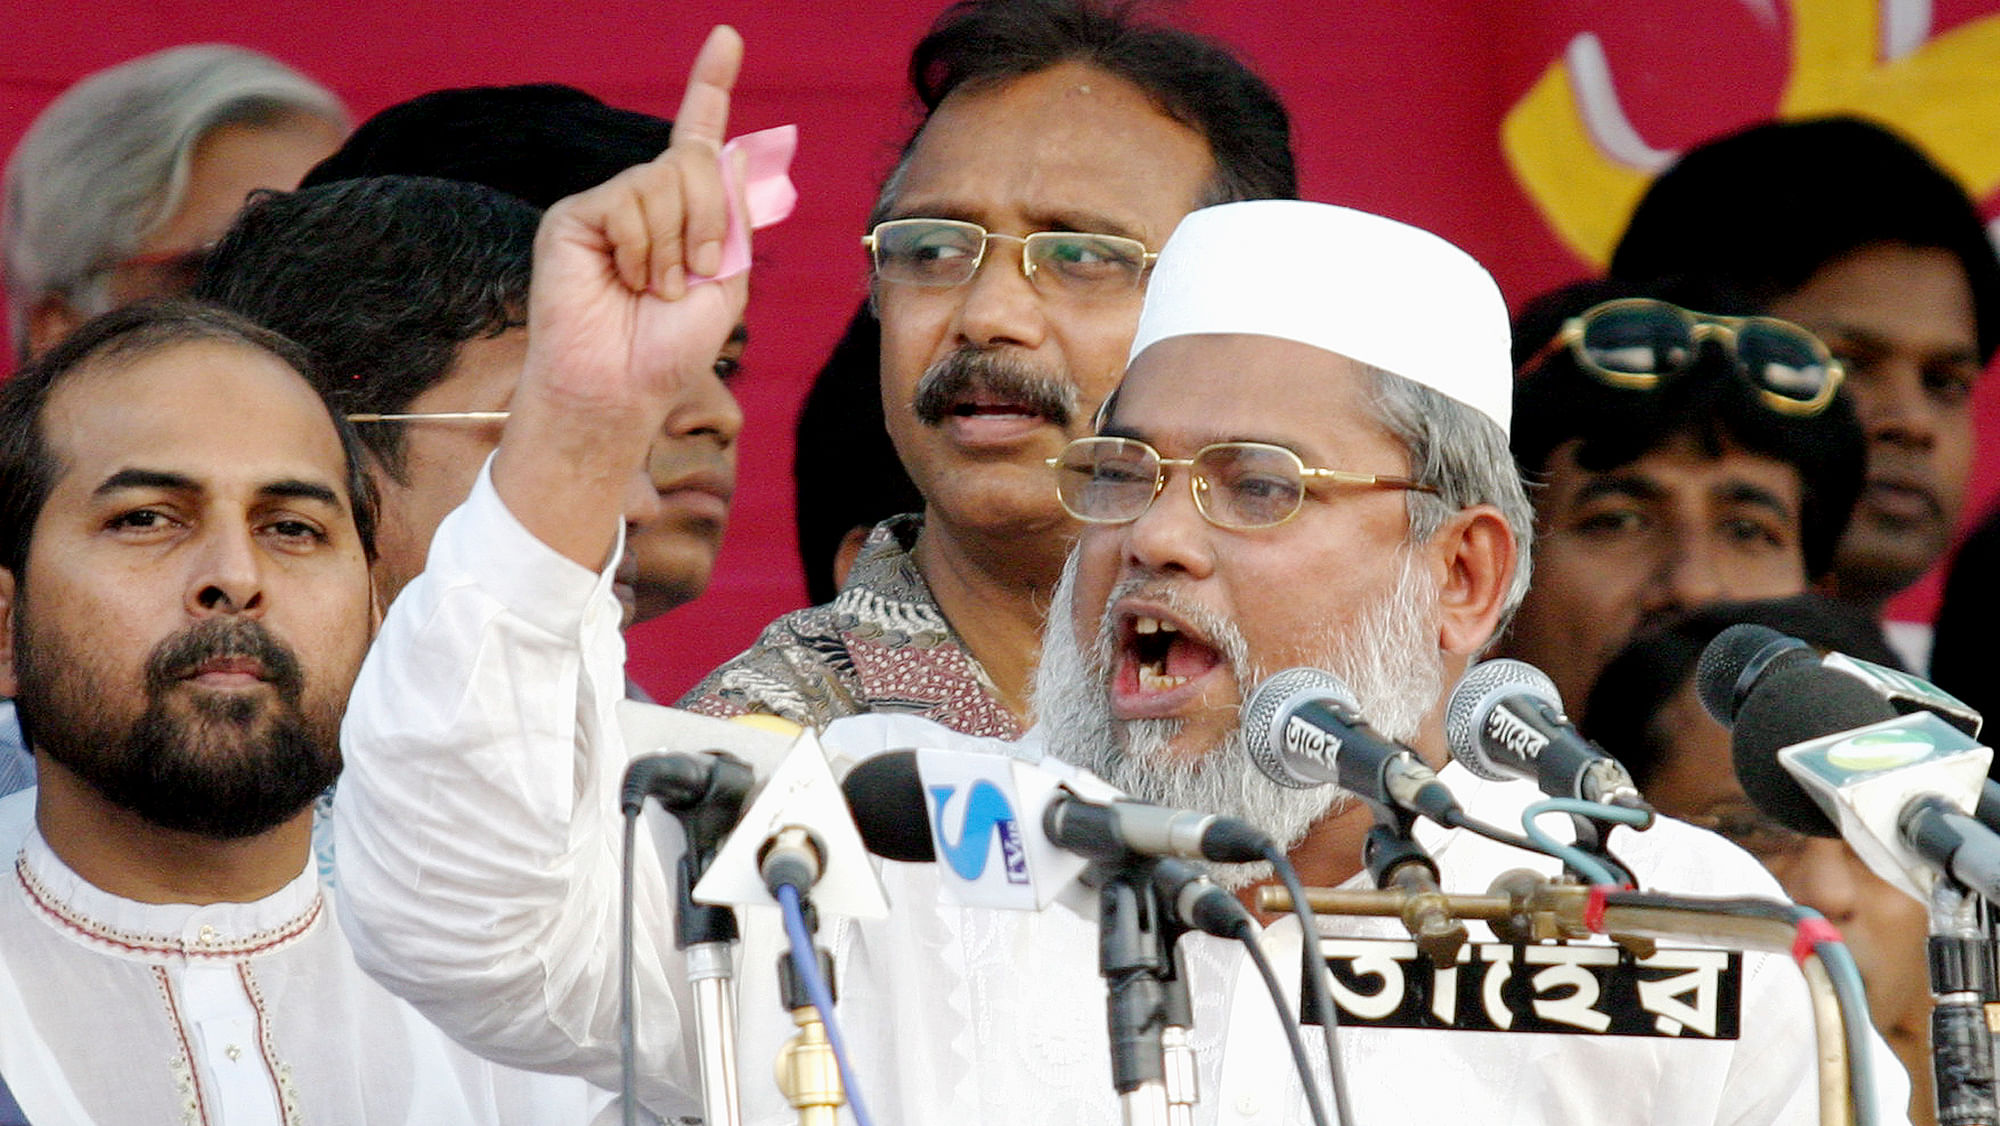 File image of Ali Ahsan Mujahid, general-secretary of Bangladesh’s biggest Islamic party Jamaat-e-Islami. (Photo: Reuters)